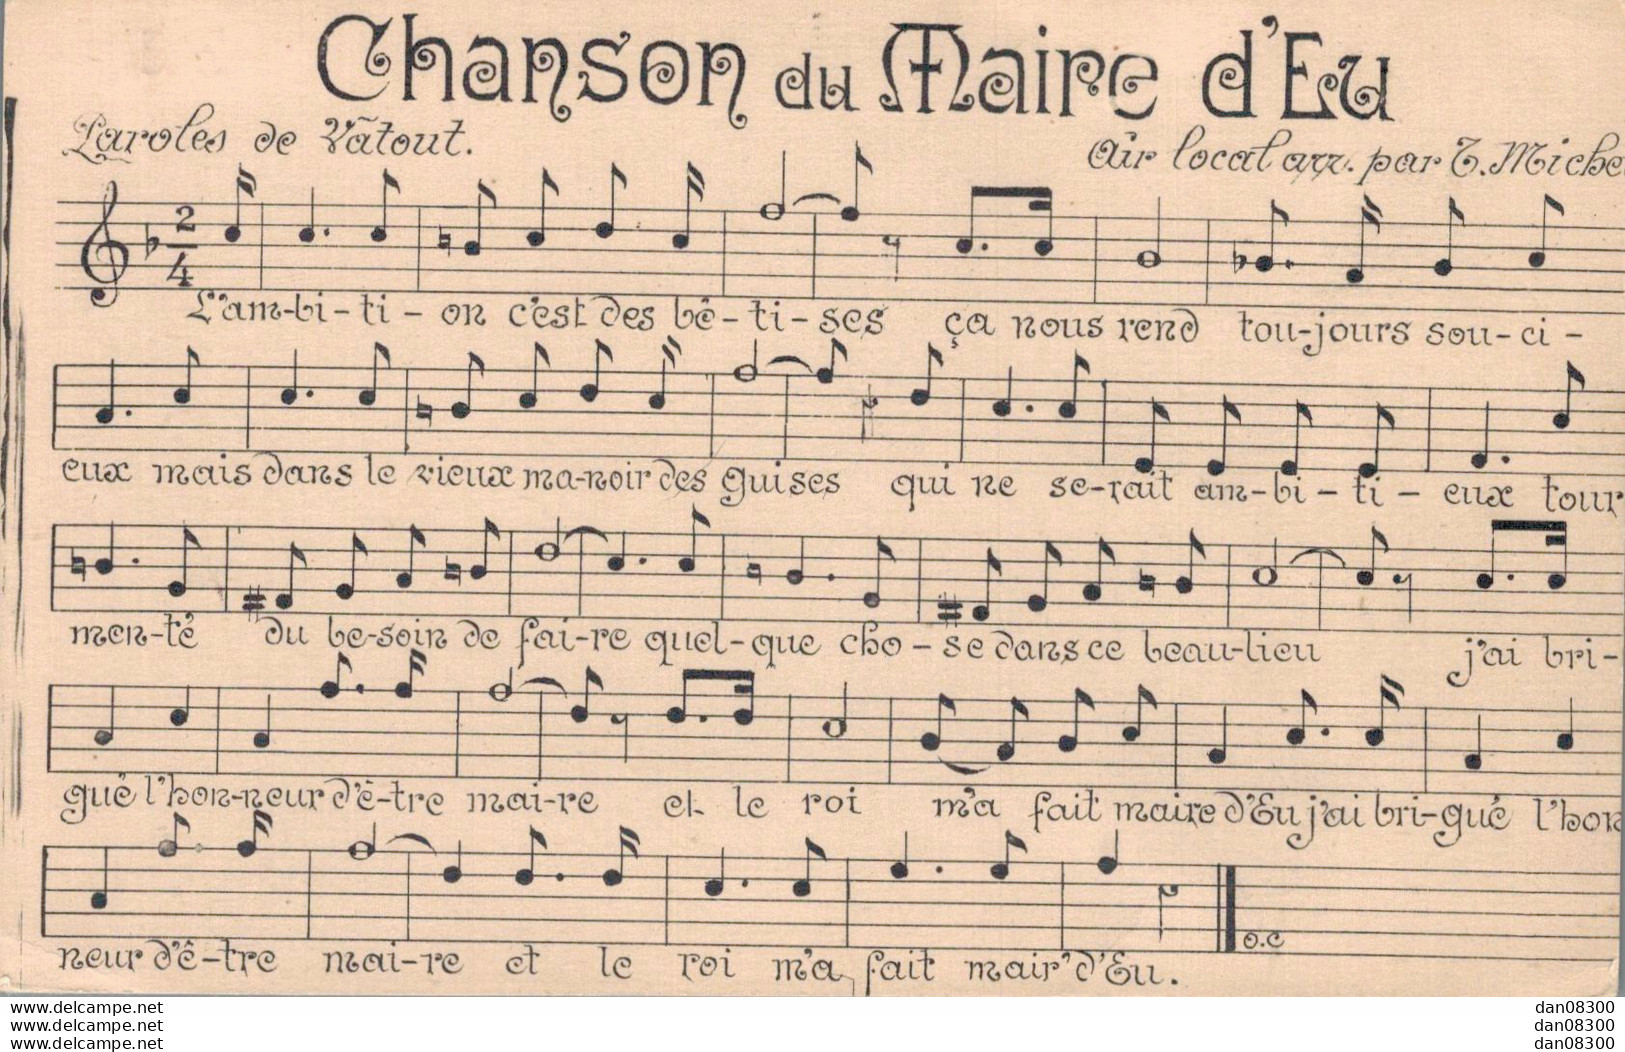 76 CHANSON DU MAIRE D'EU - Music